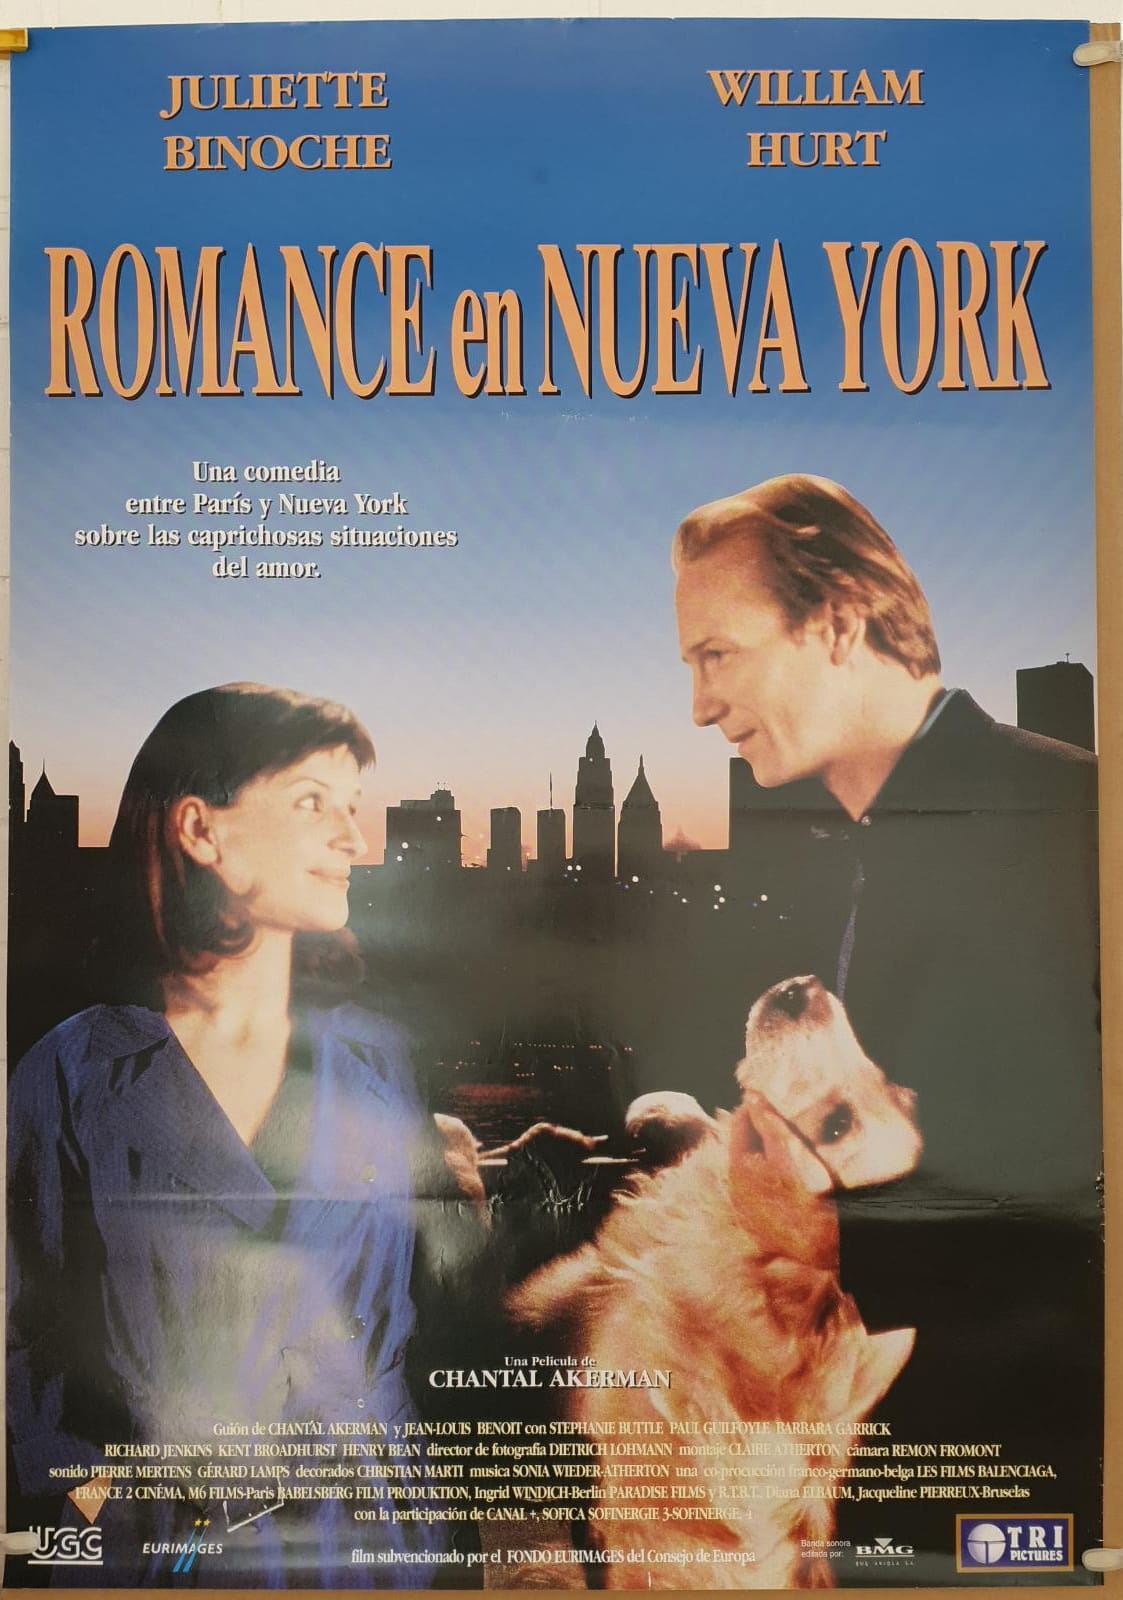 Romance en Nueva York. Cartel (100x70) de Estreno